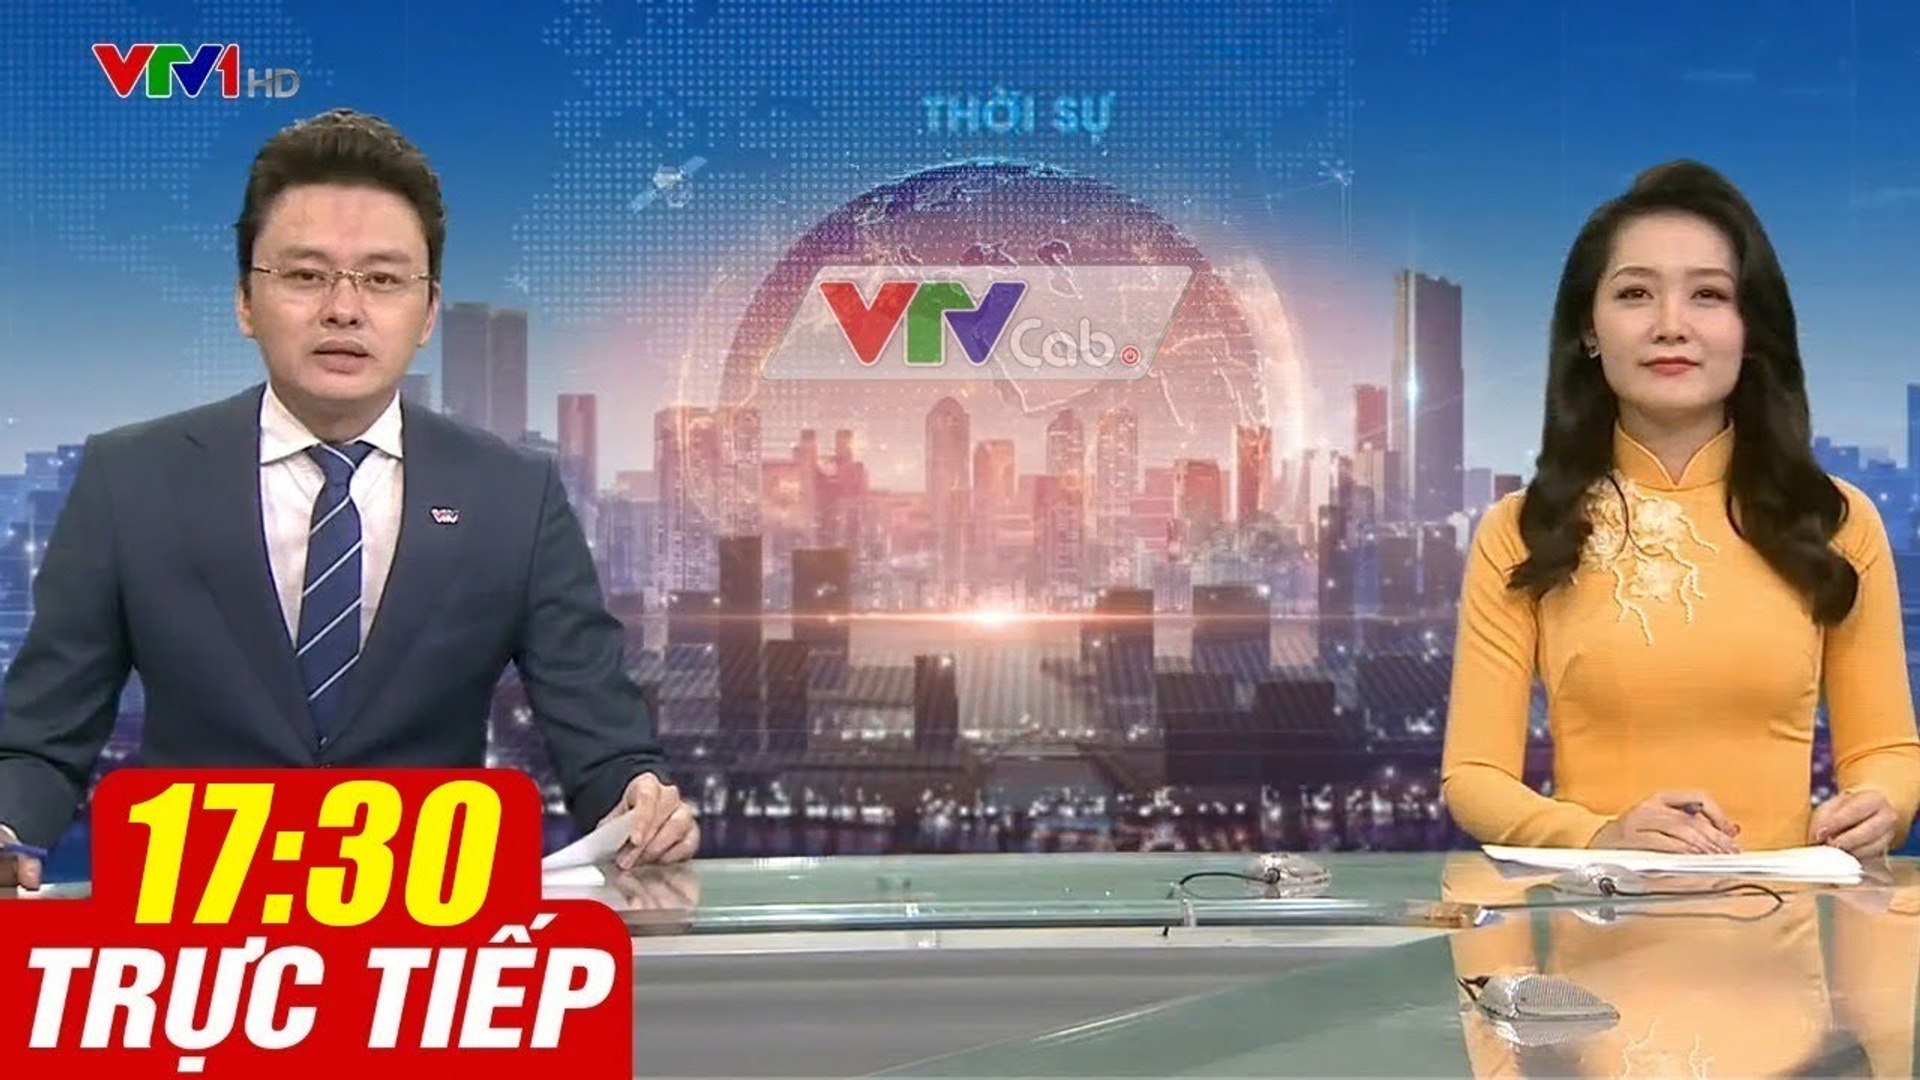 Trực Tiếp VIỆT NAM HÔM NAY 17h30 ngày 18.09.2020  Tin tức thời sự VTV1 mới nhất hôm nay